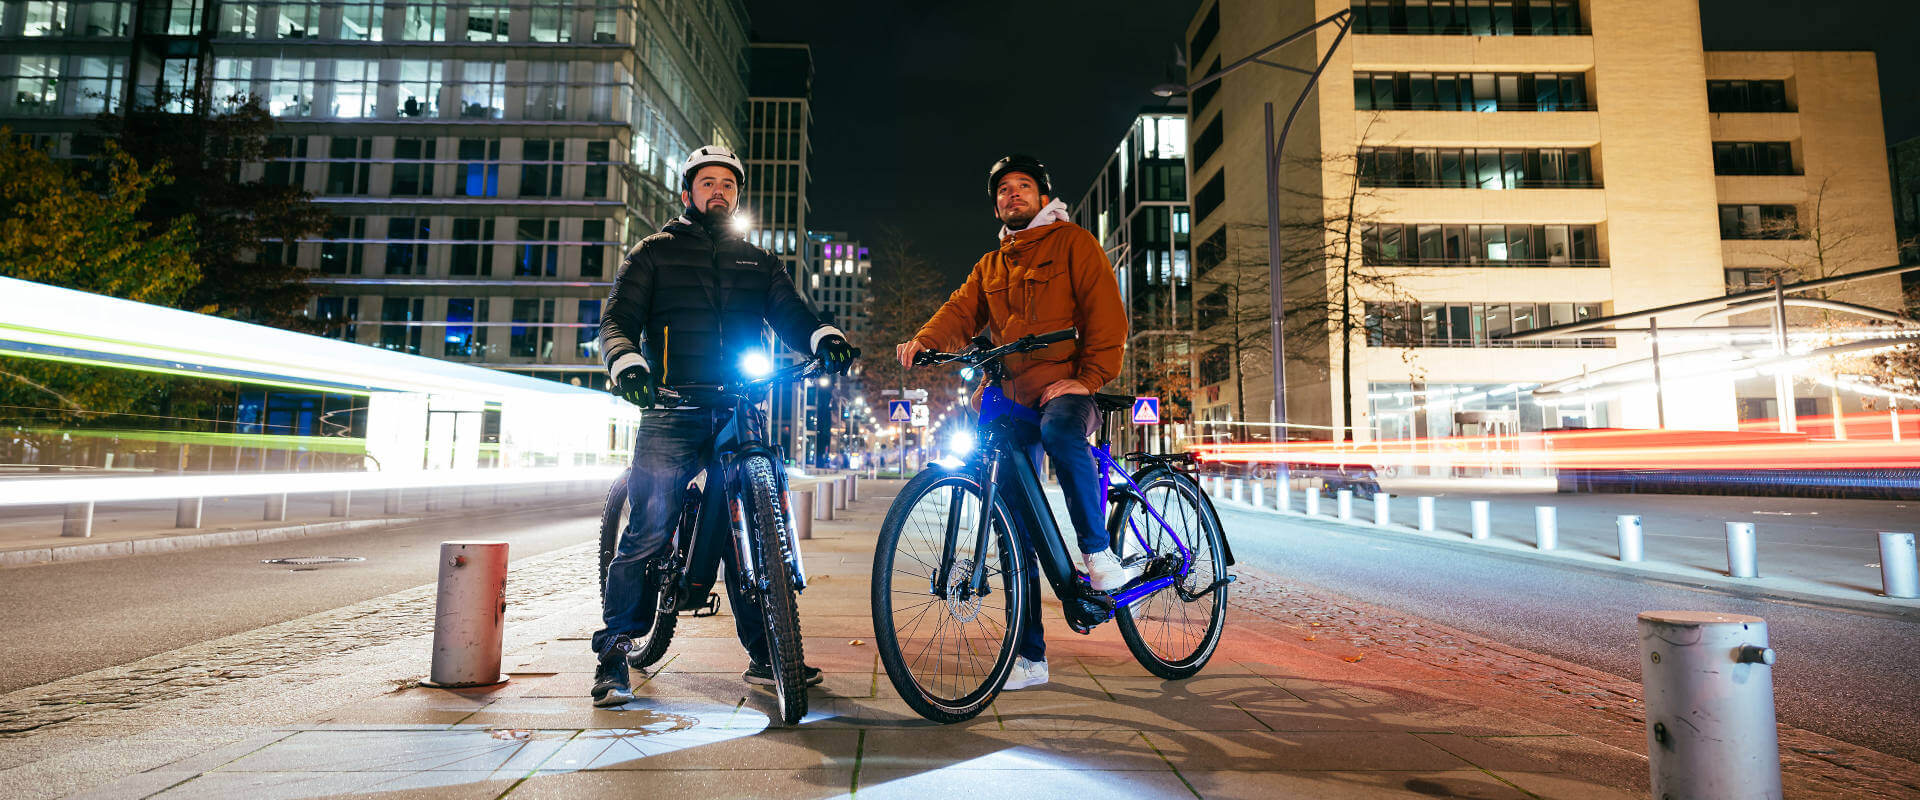 Mærk spændingen ved at cykle i byen om natten